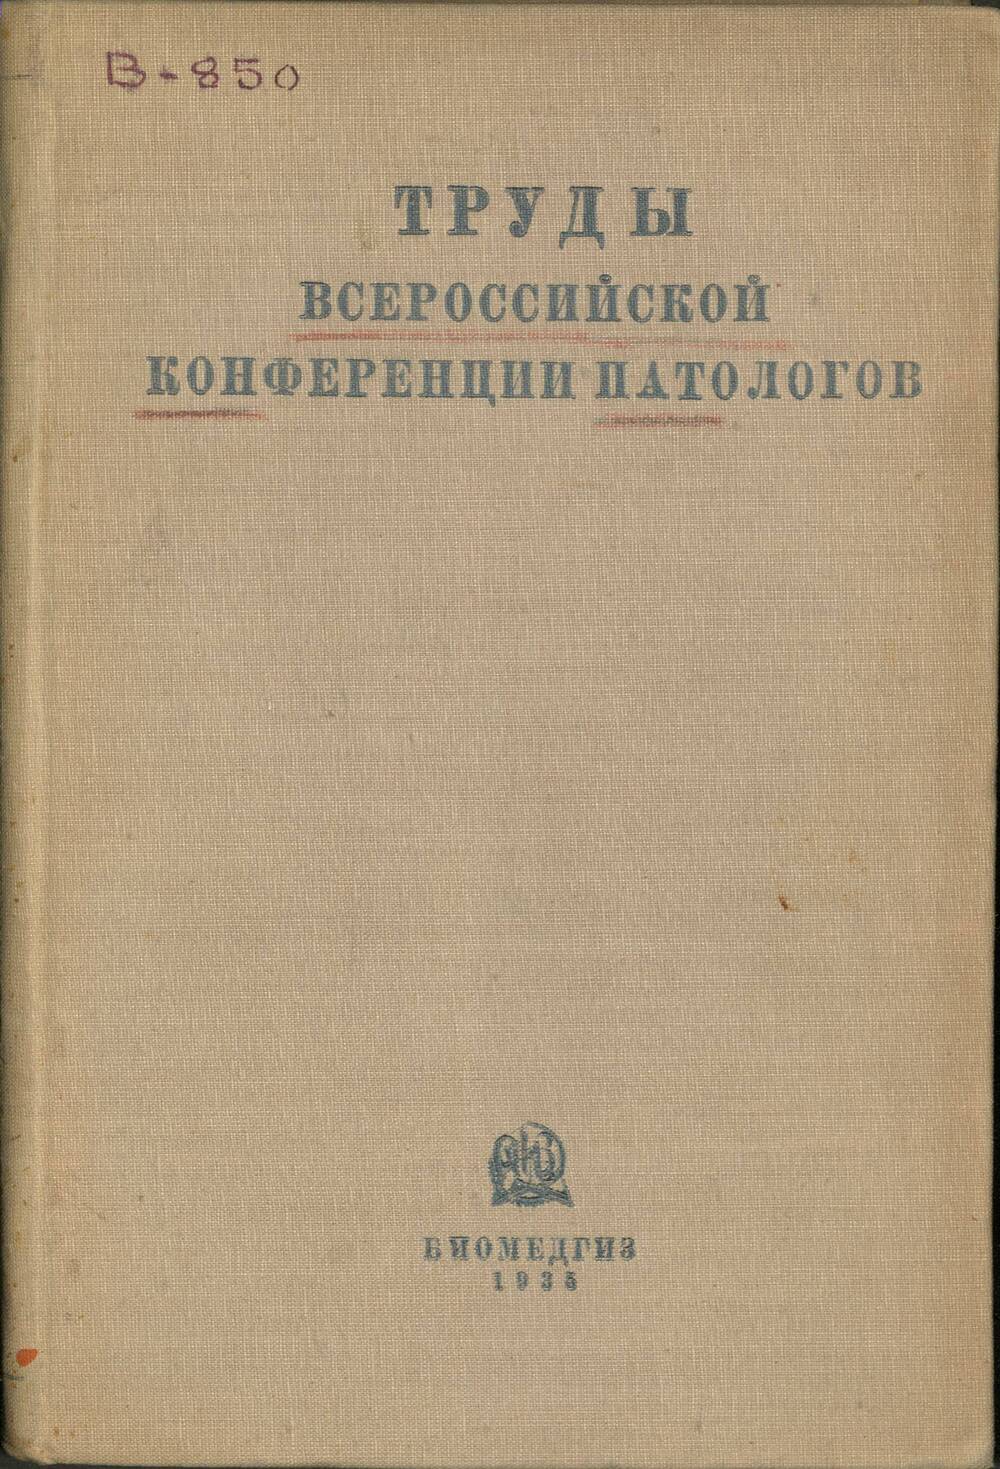 Труды всероссийской конференции патологов 1-5 апреля 1934 г.